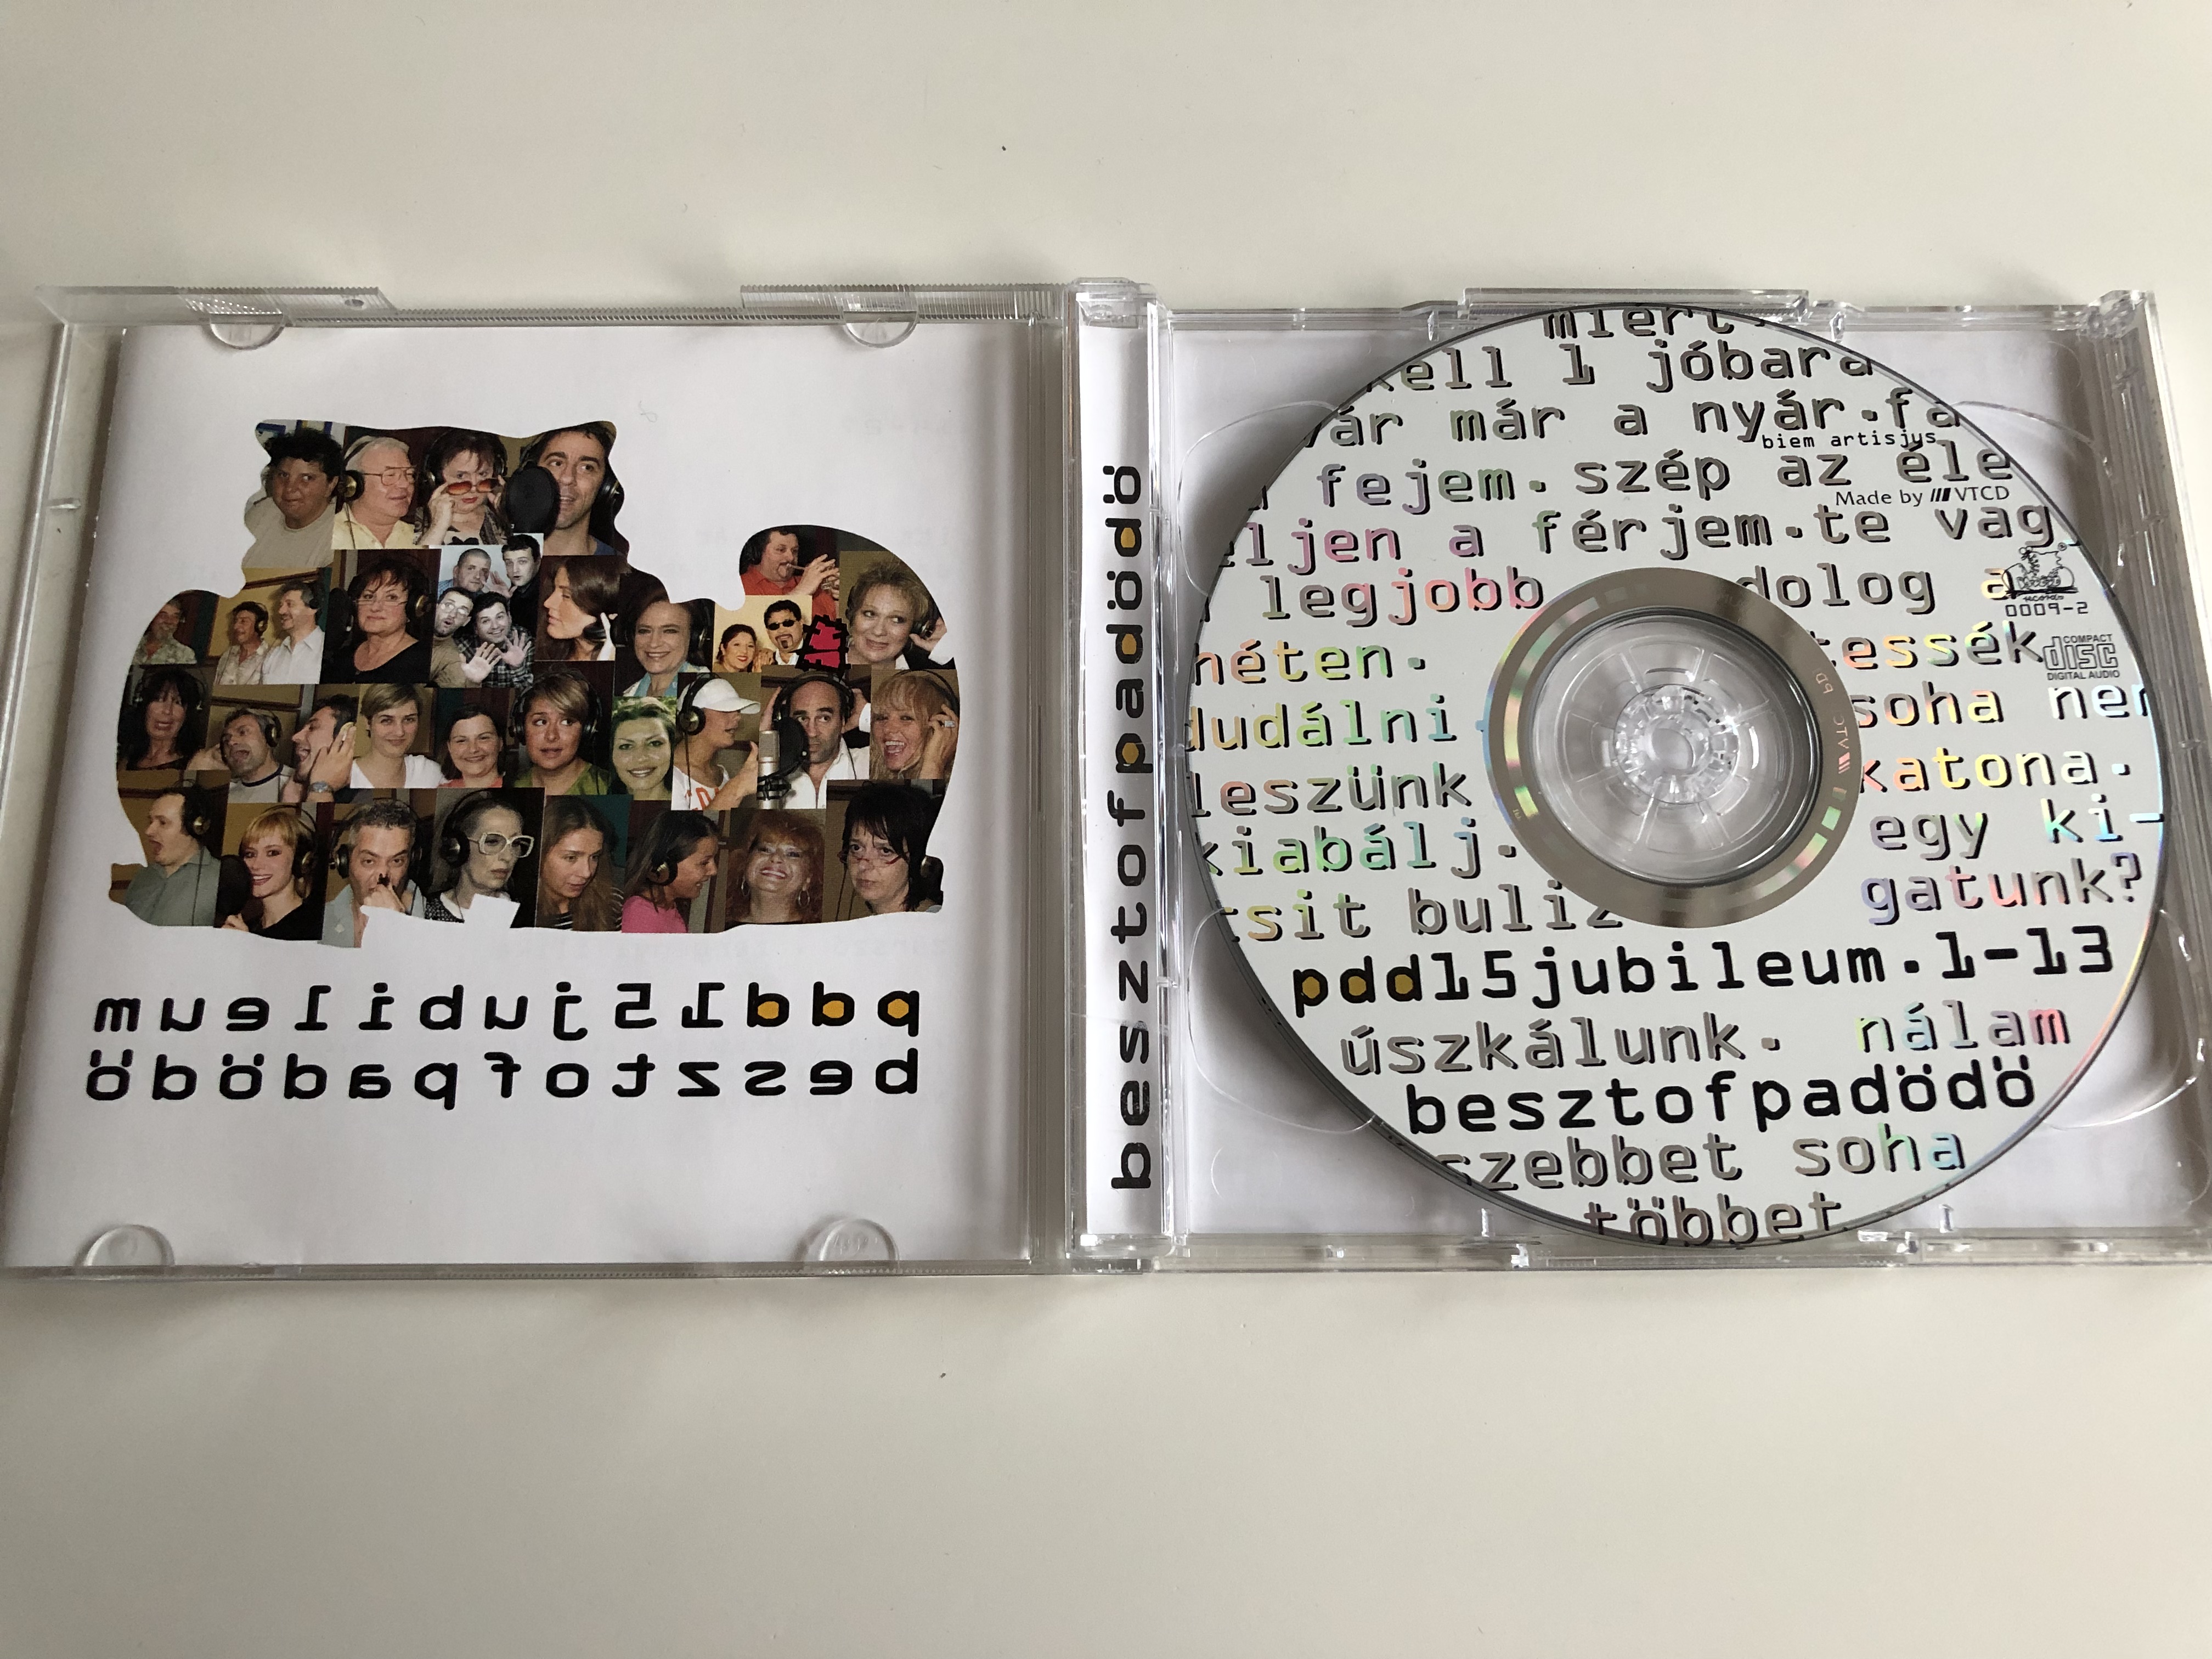 pa-d-d-pdd-15-jubileum-14-27-audio-cd-2003-besztofpad-d-best-of-pa-d-d-6-.jpg